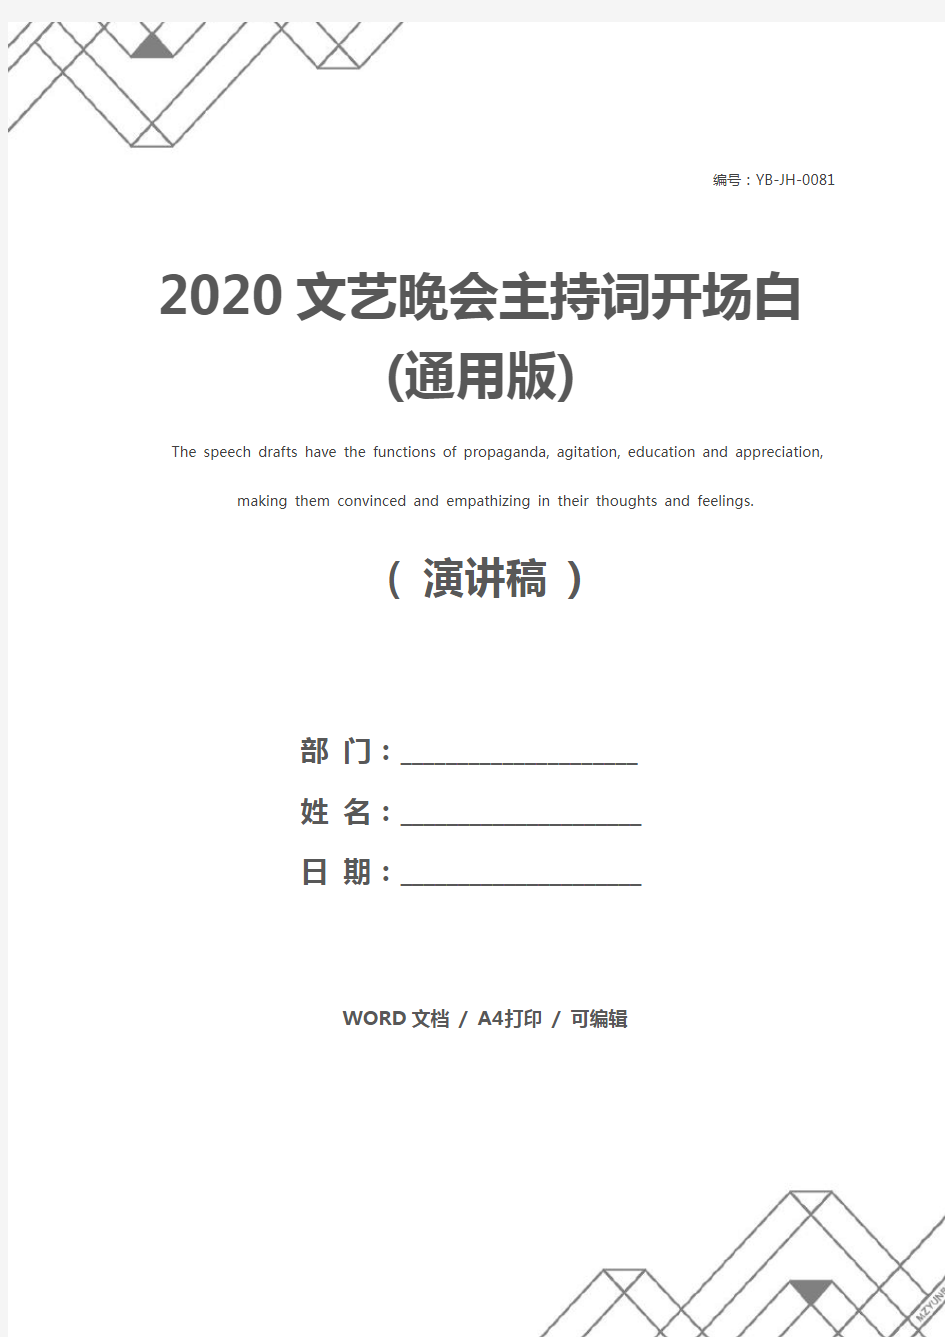 2020文艺晚会主持词开场白(通用版)